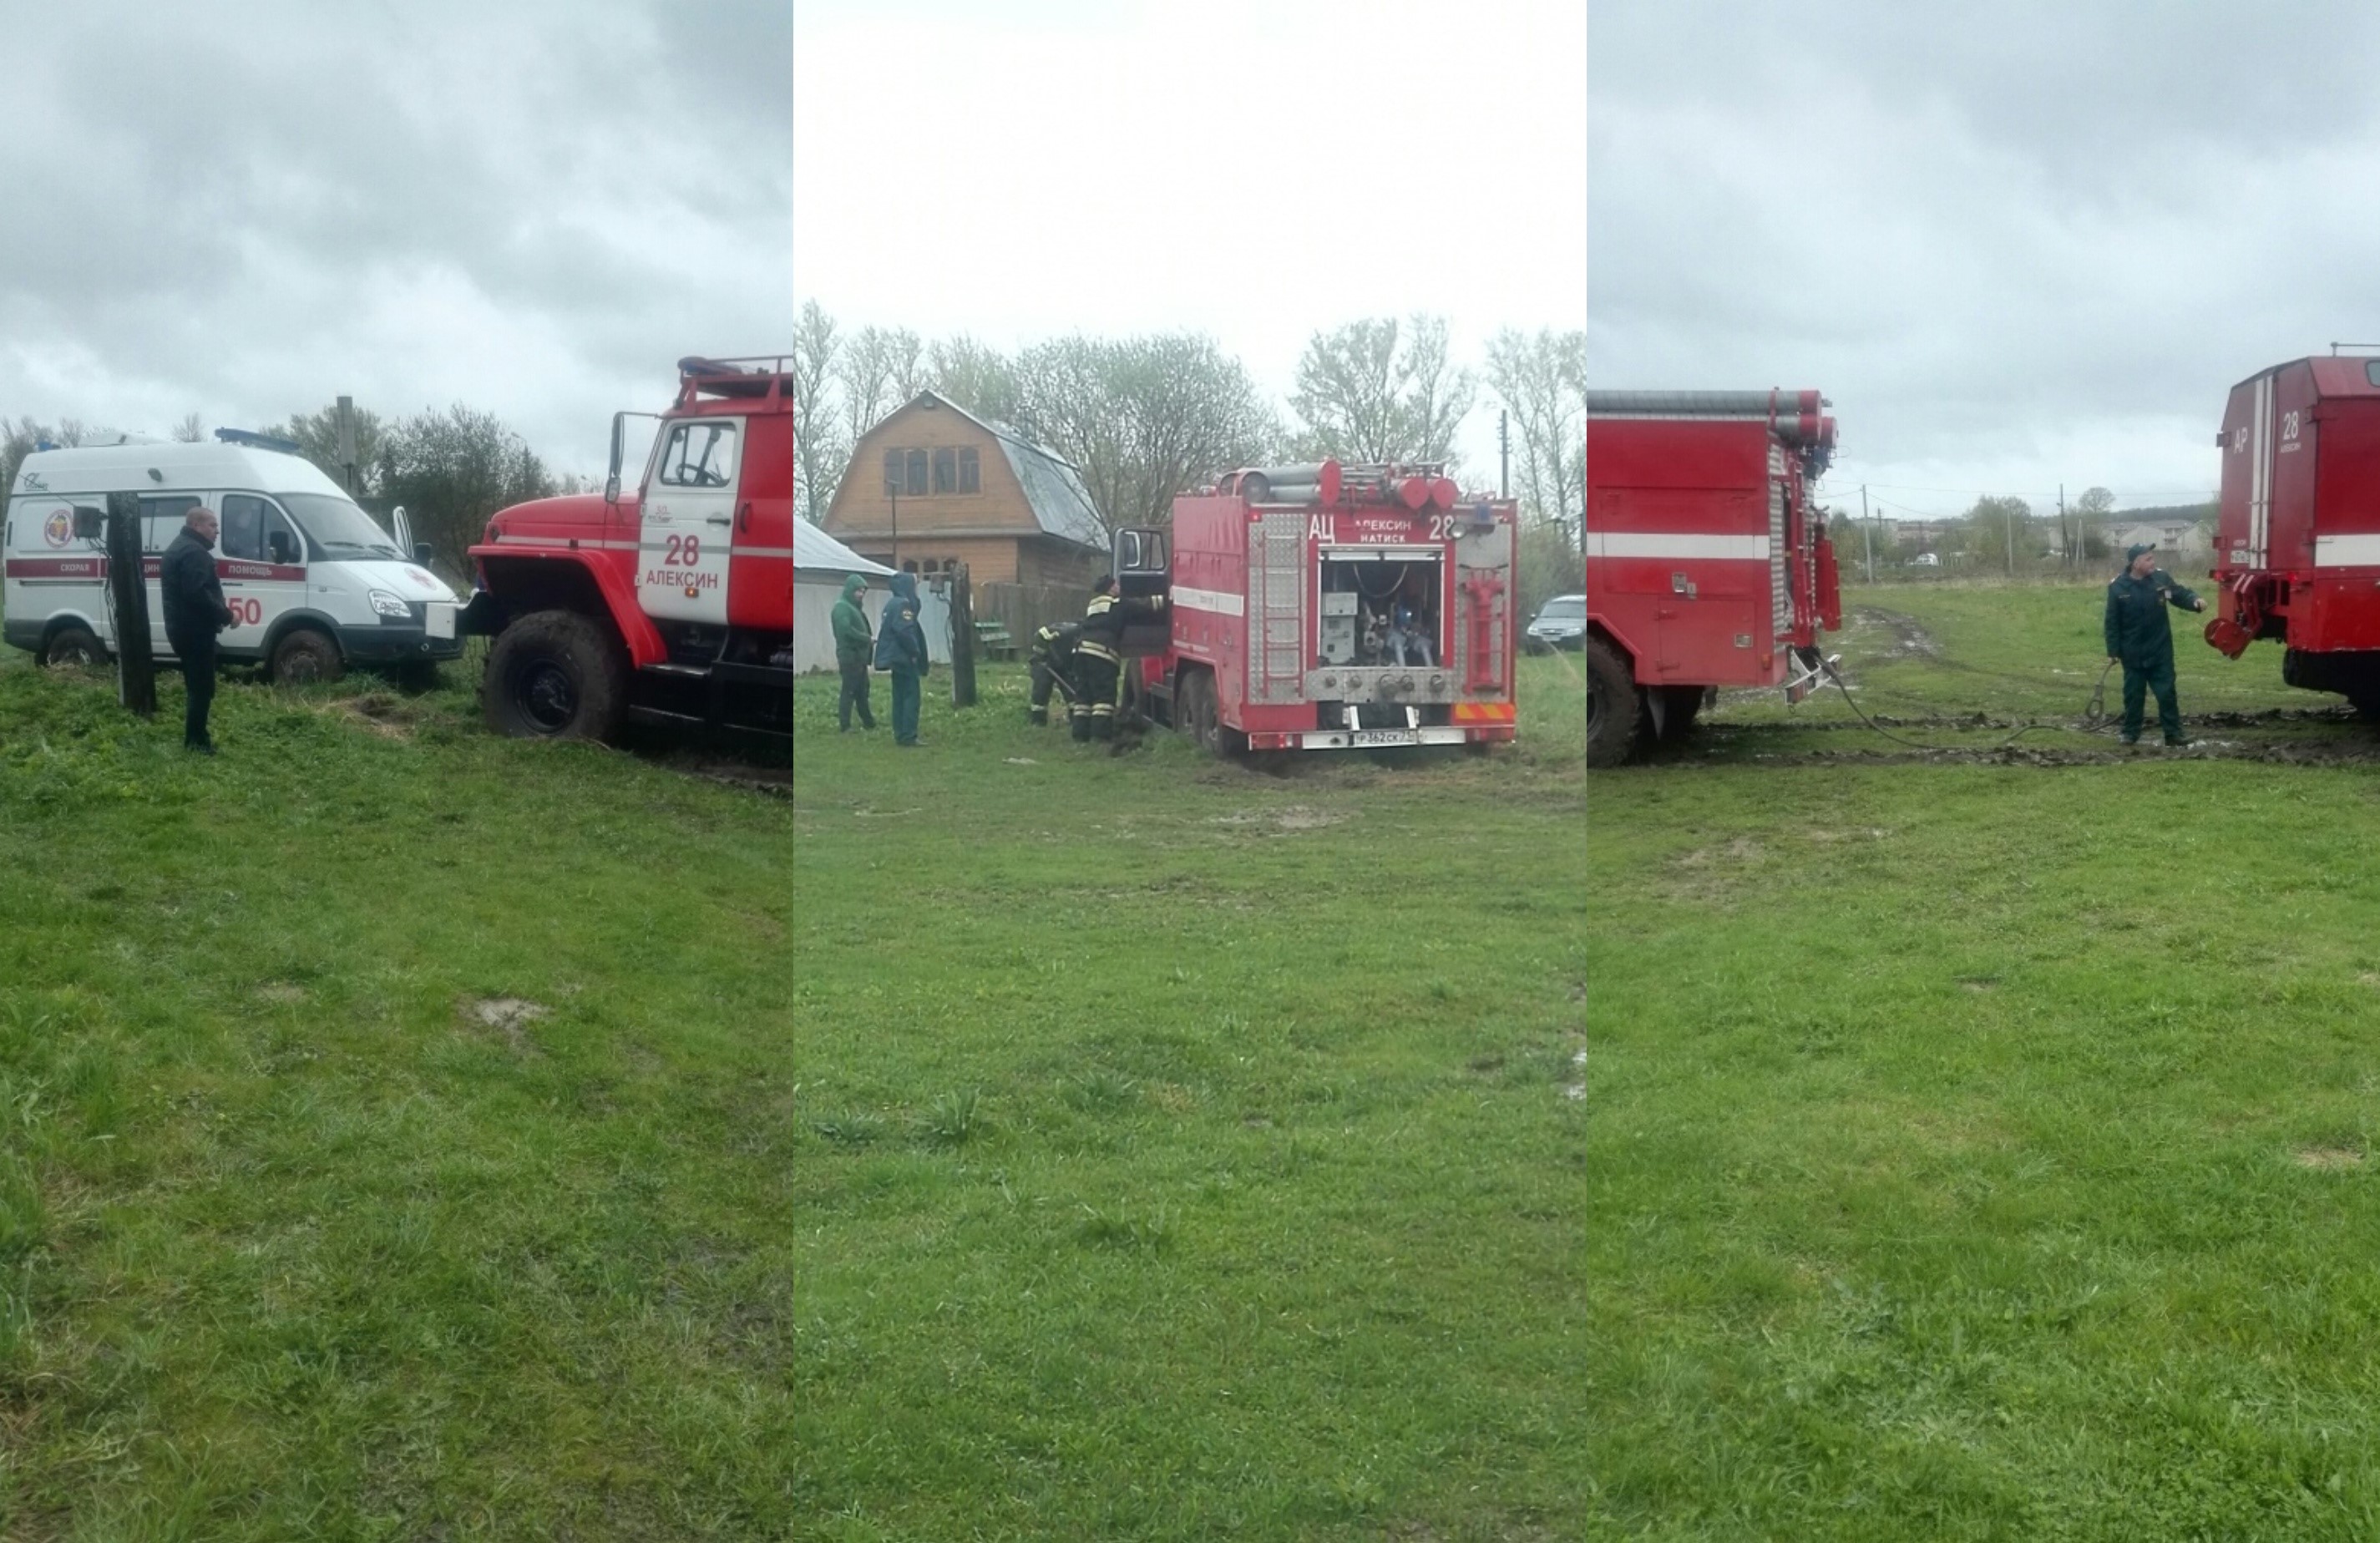 В Алексине машина скорой помощи застряла в грязи. На помощь приехали пожарные и тоже застряли